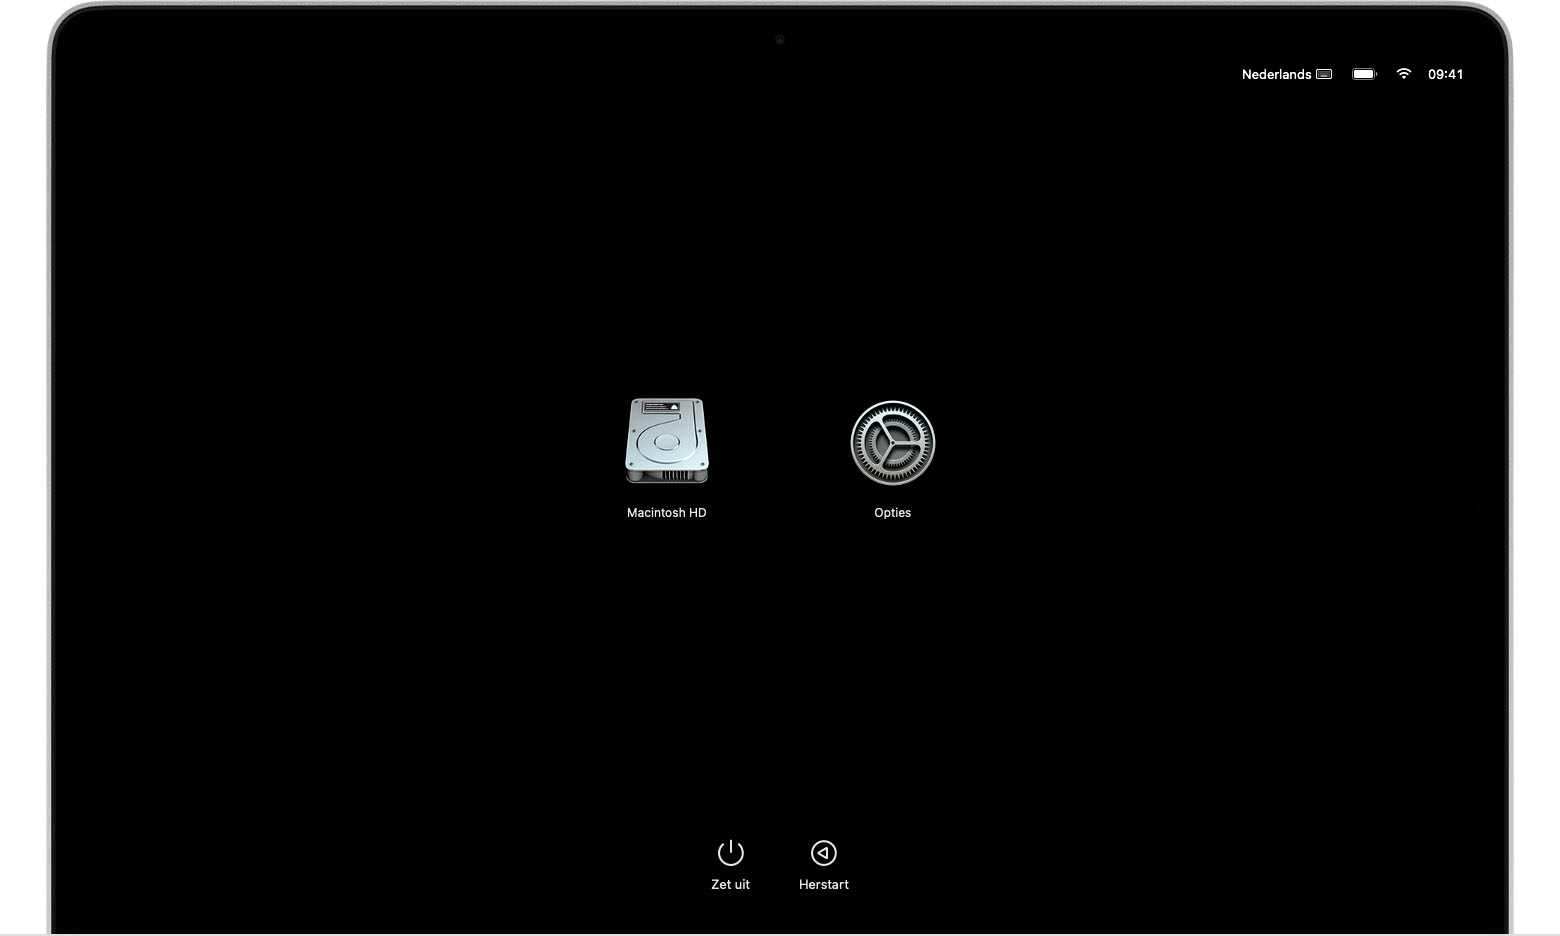 macOS-opstartscherm met symbolen voor Macintosh HD en Opties